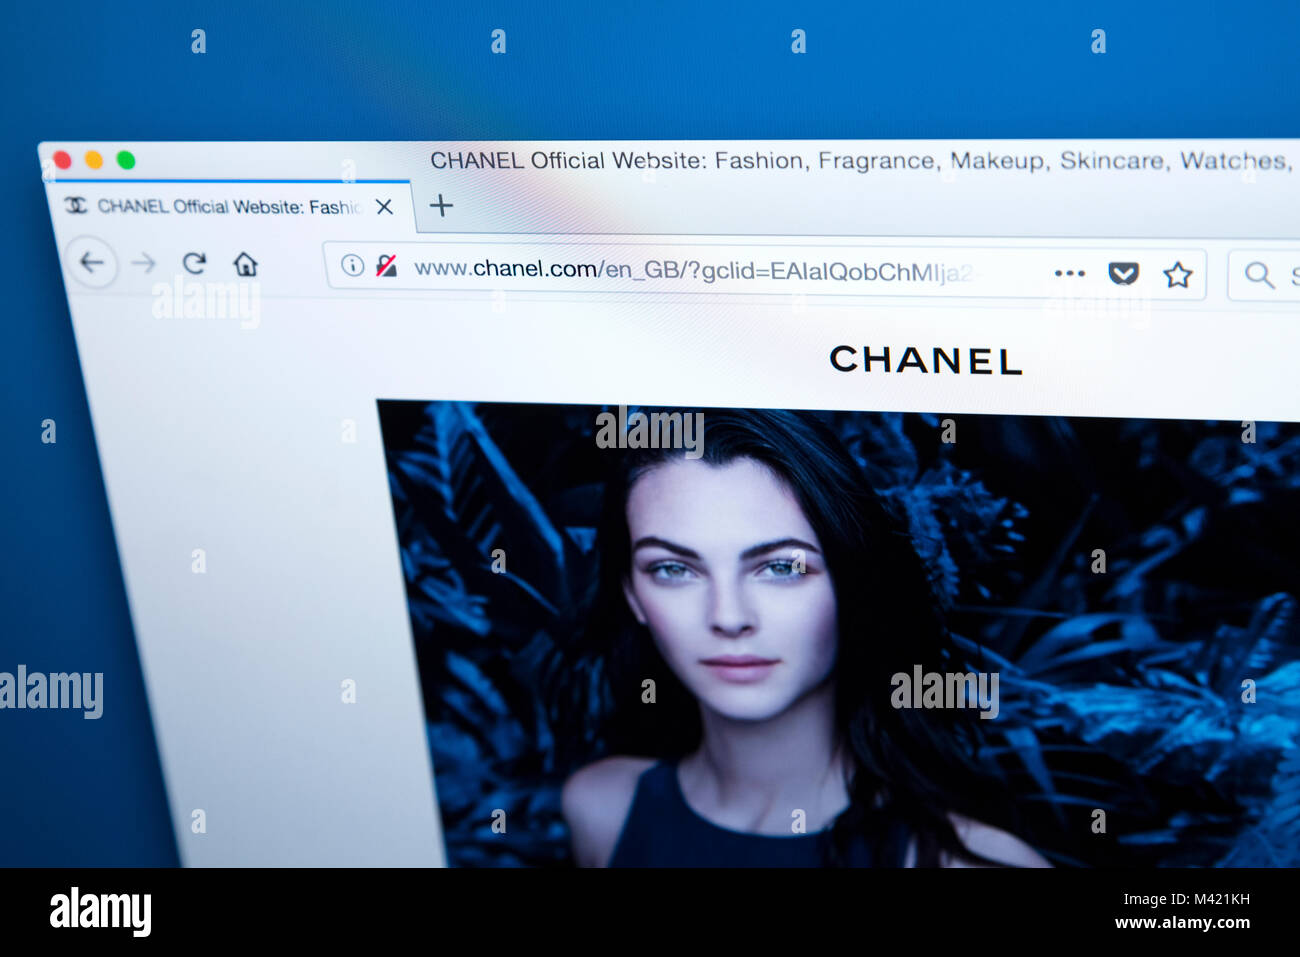 Londres, UK - 8 février 2018 : La page d'accueil du site web officiel de  Chanel - la maison de mode de luxe français, le 8 février 2018 Photo Stock  - Alamy